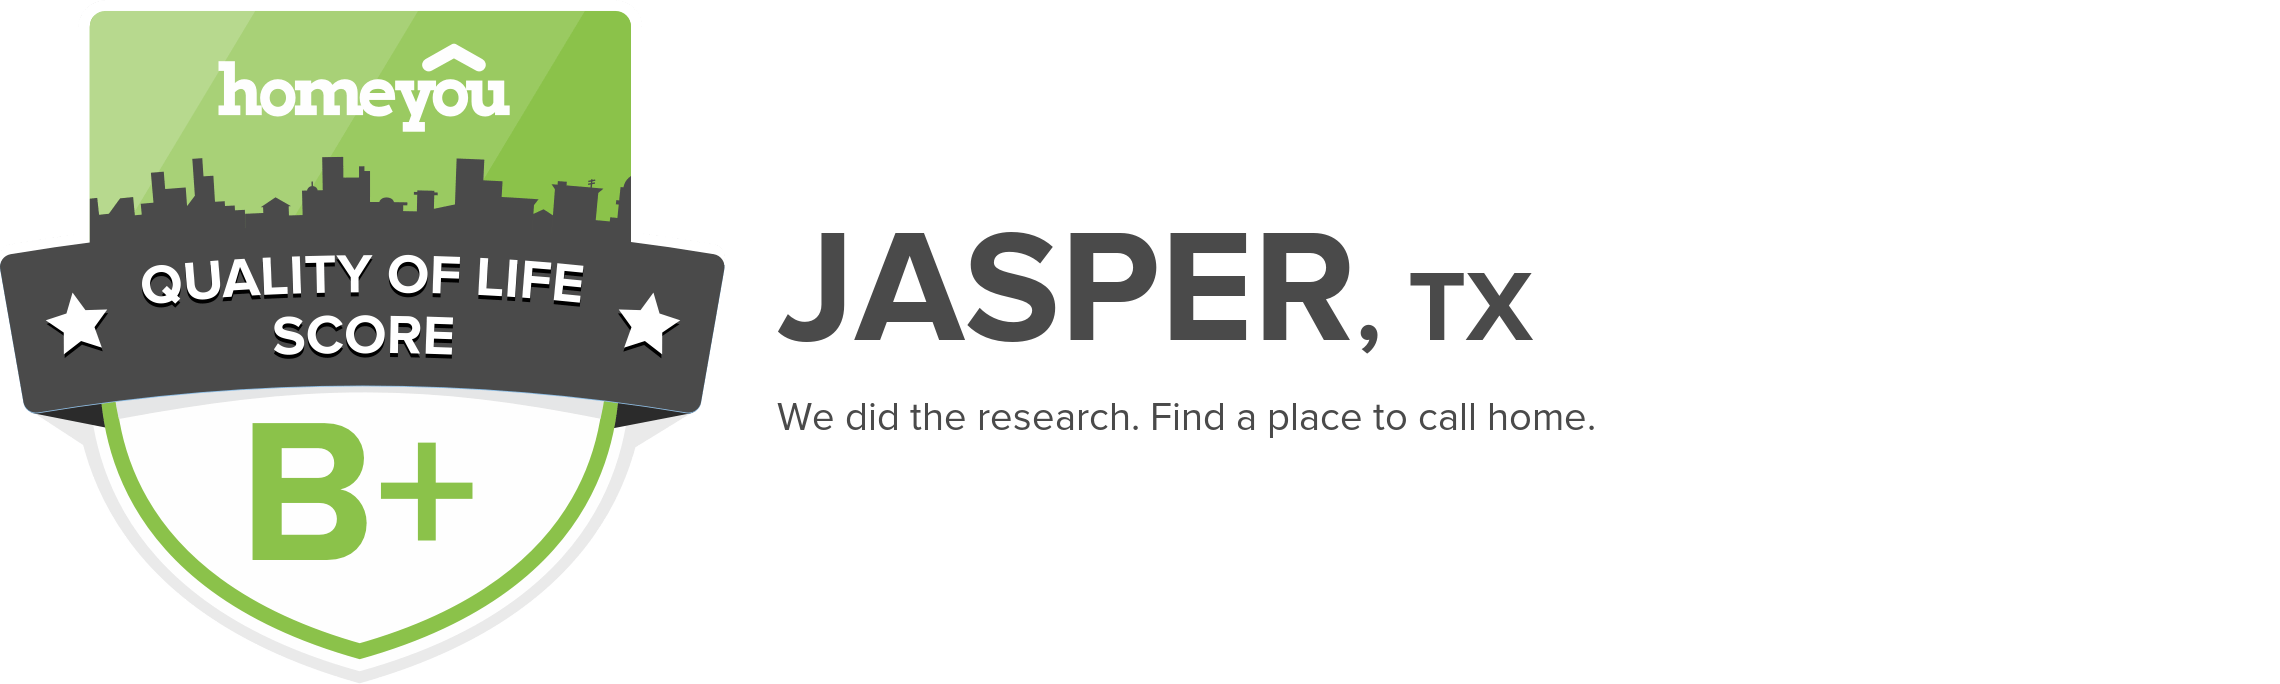 Jasper, TX